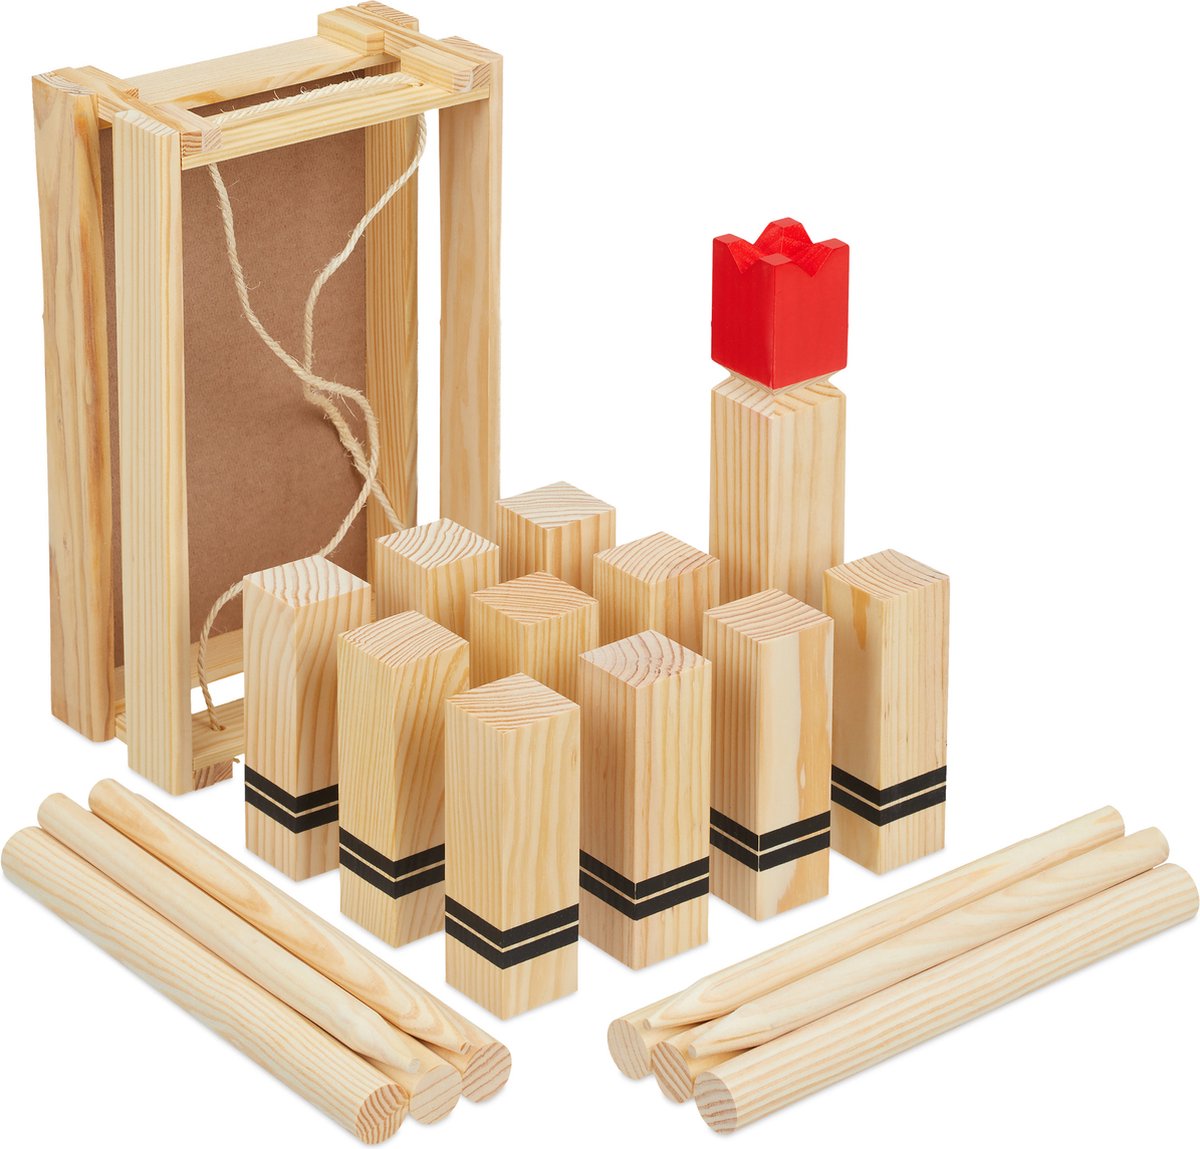 Relaxdays Kubb spel met rode koning - houten blokken - familiespel - 21 speelfiguren